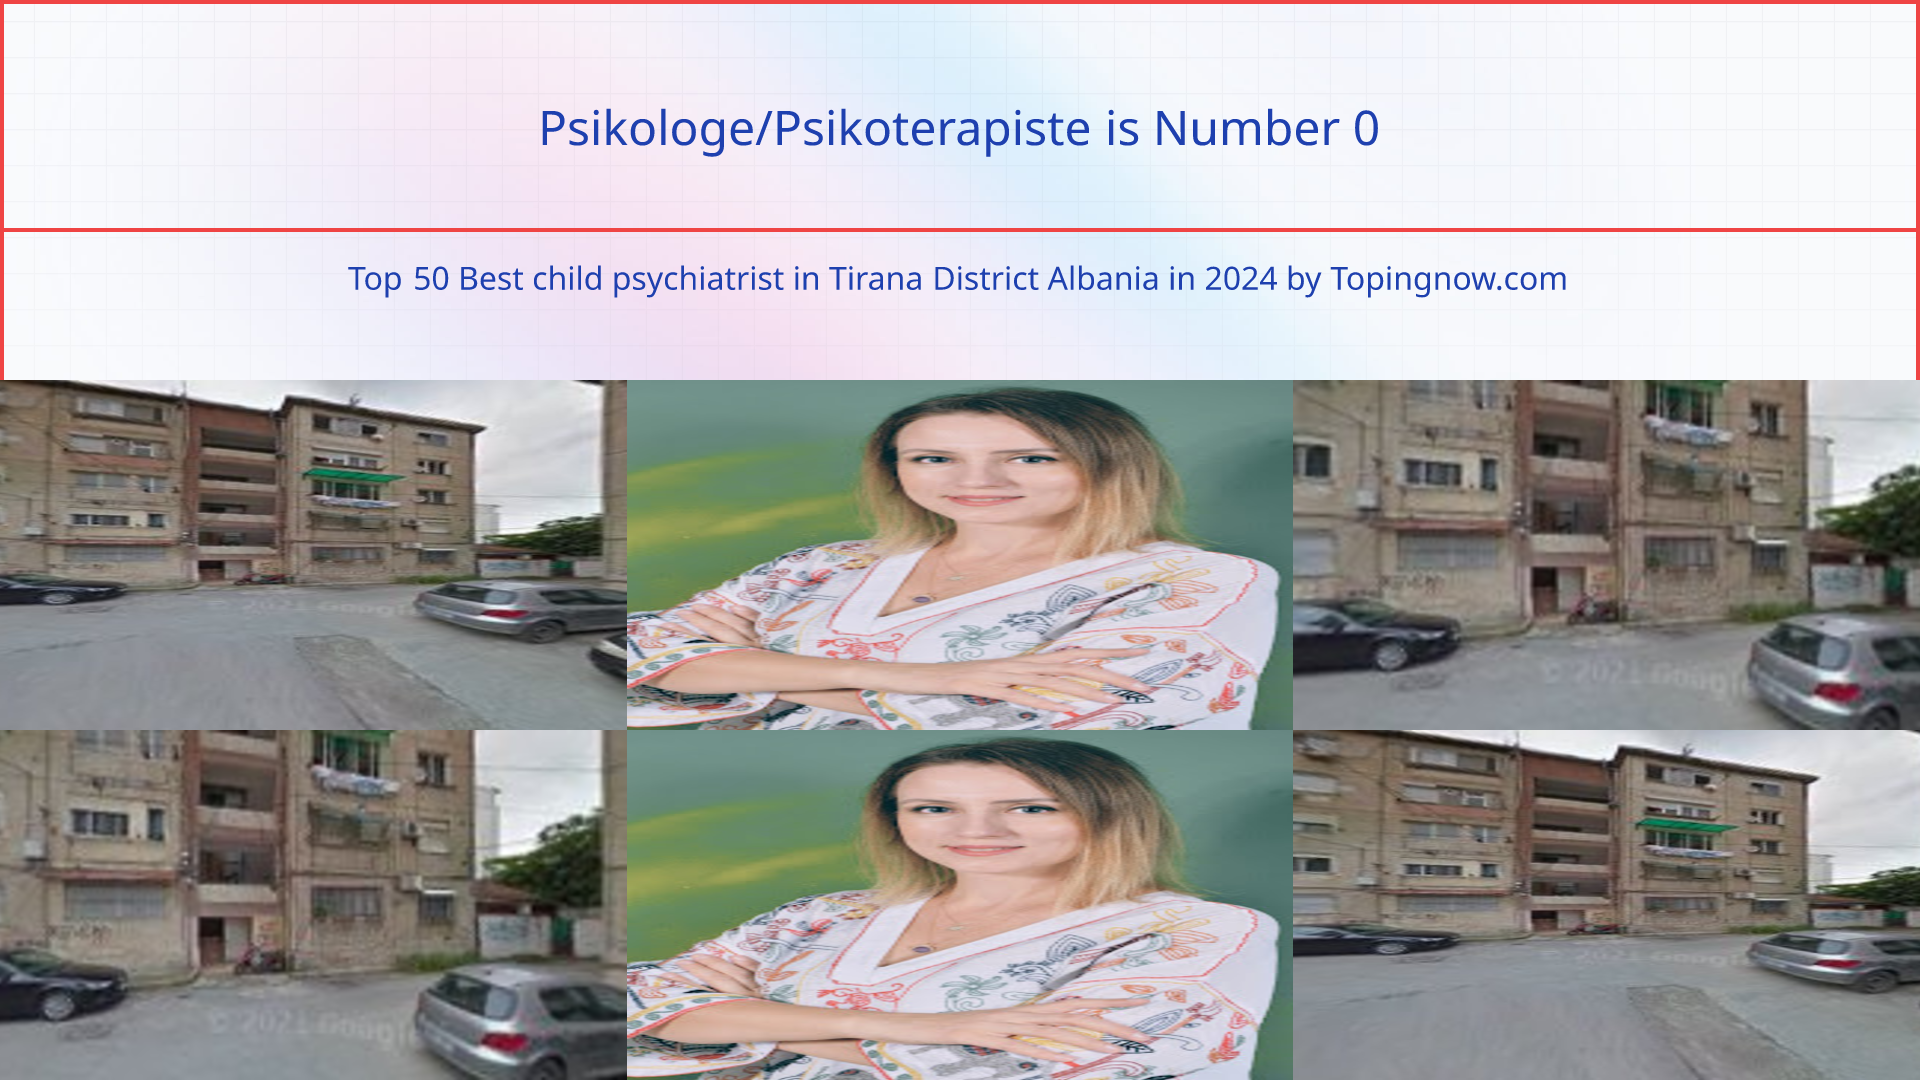 Psikologe/Psikoterapiste: Top 50 Best child psychiatrist in Tirana District Albania in 2024